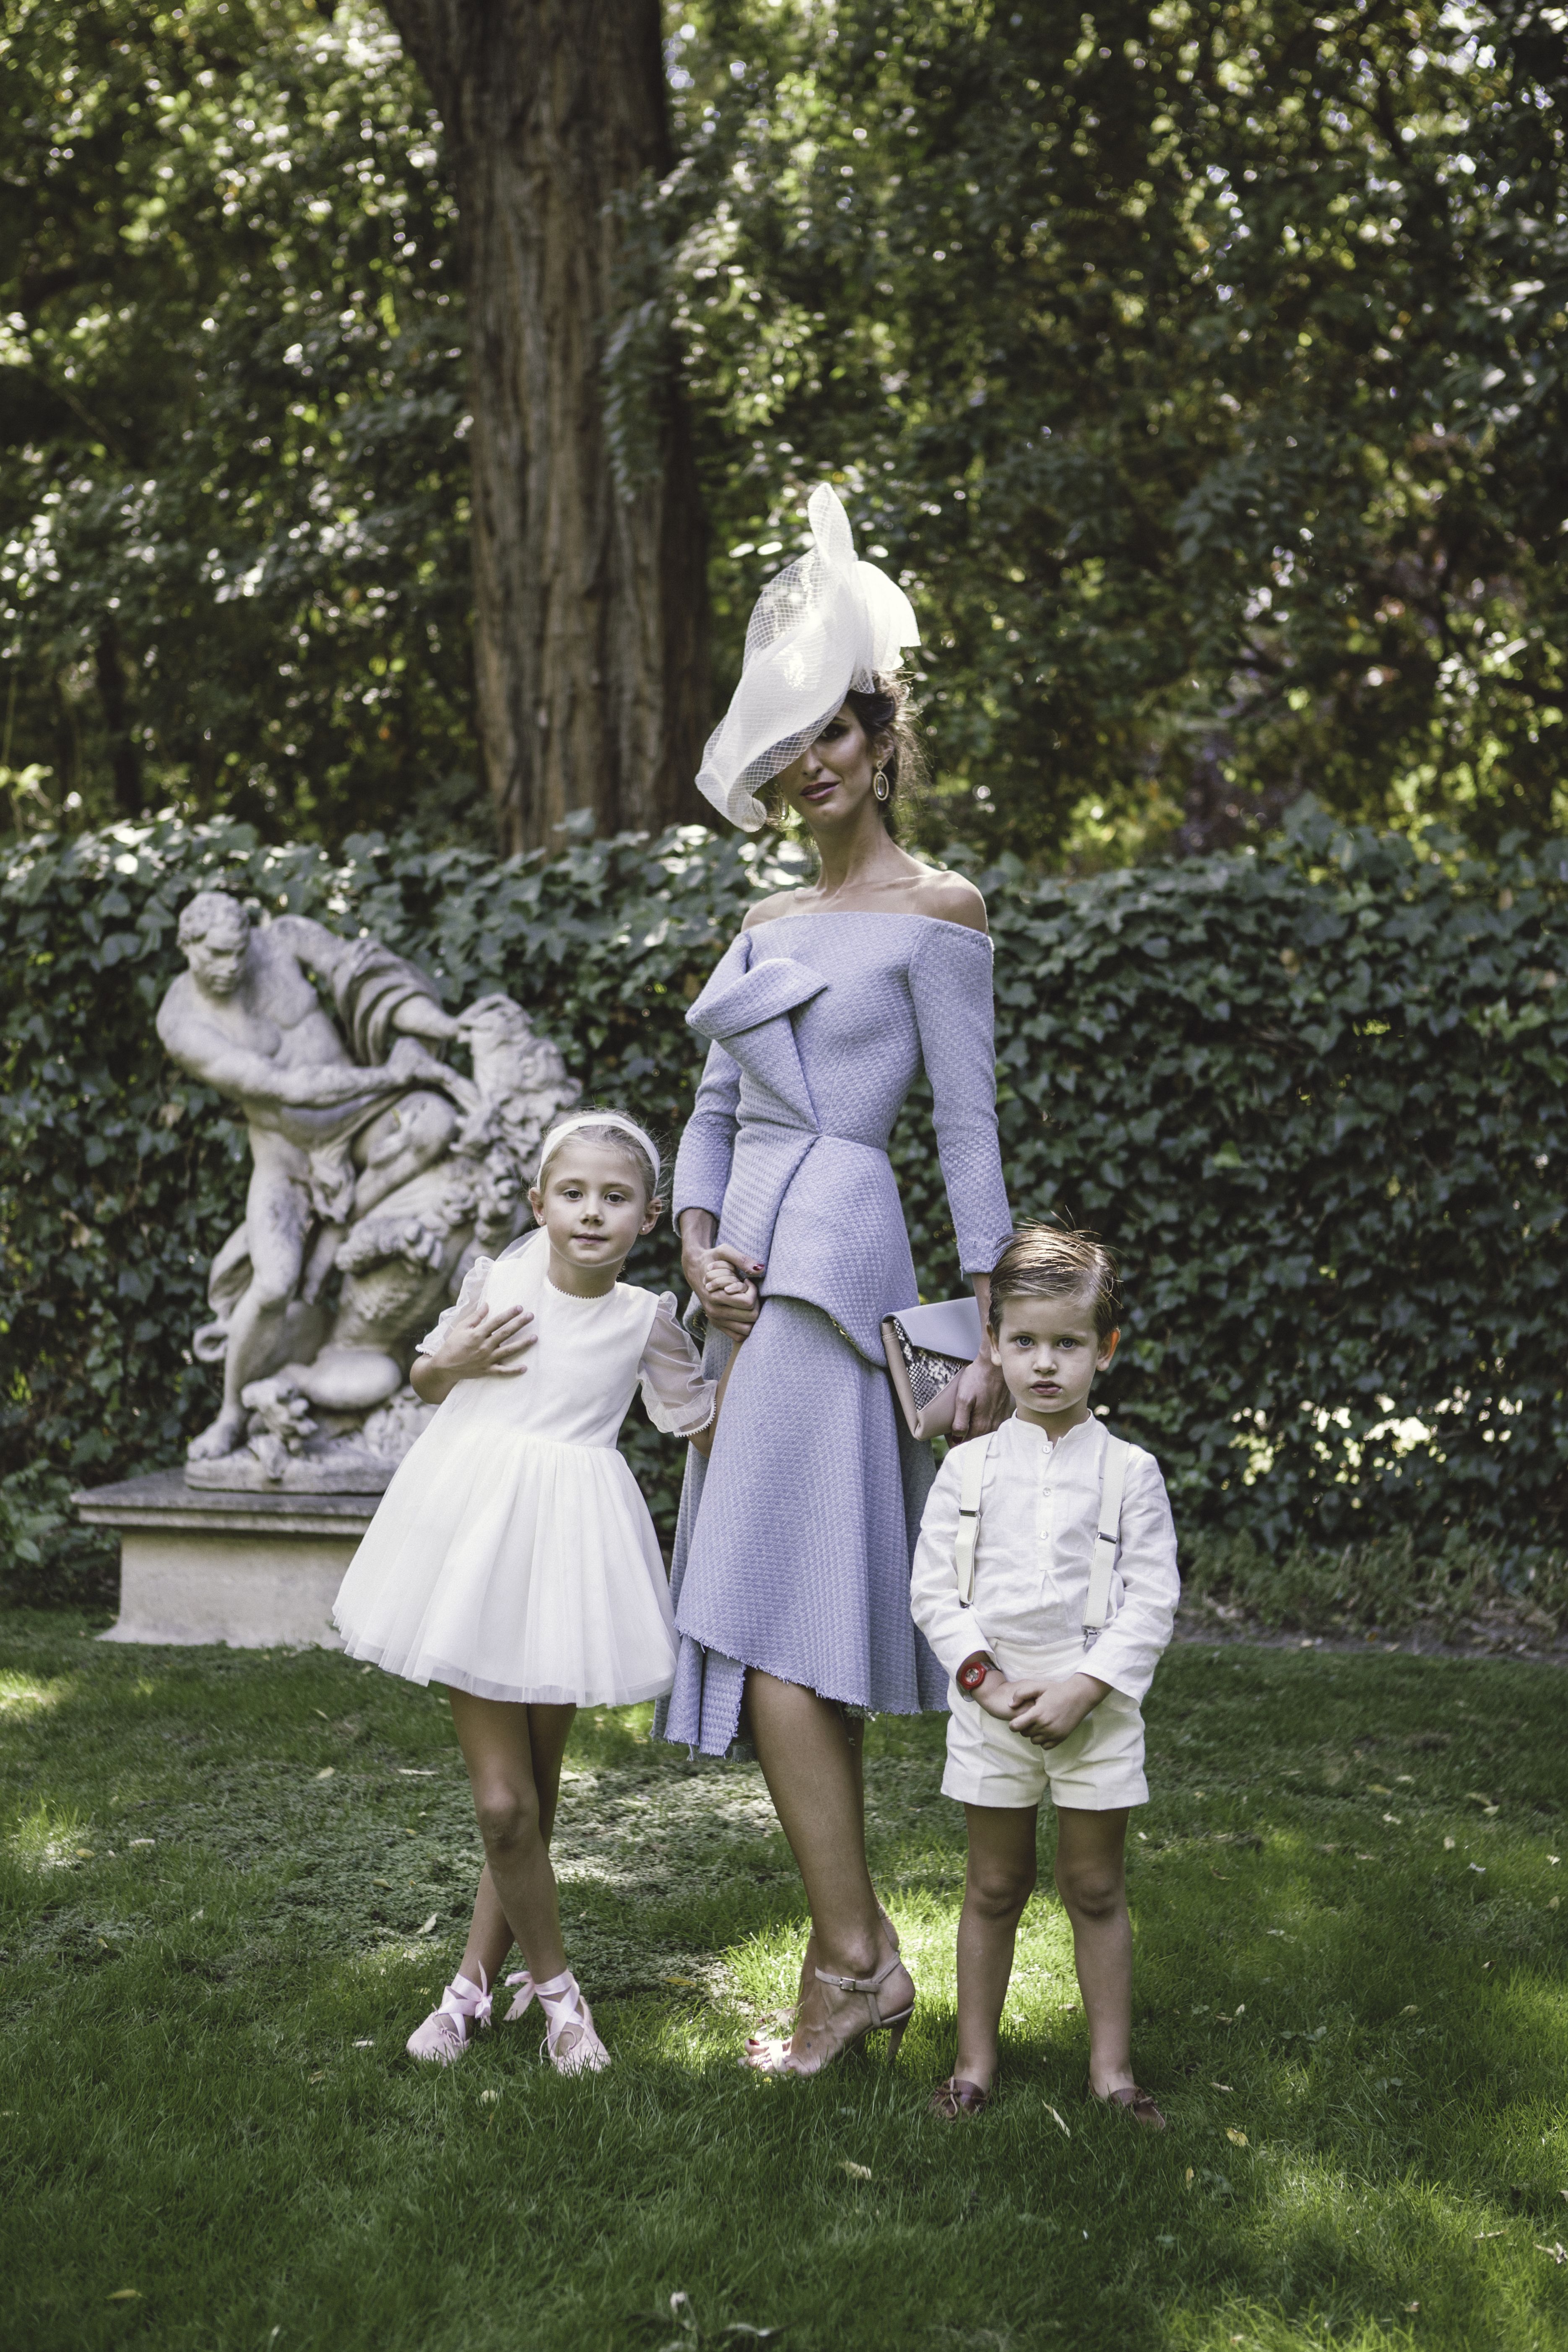  Lea diseñadora vistiendo uno de sus modelos acompañada de sus dos hijos. 